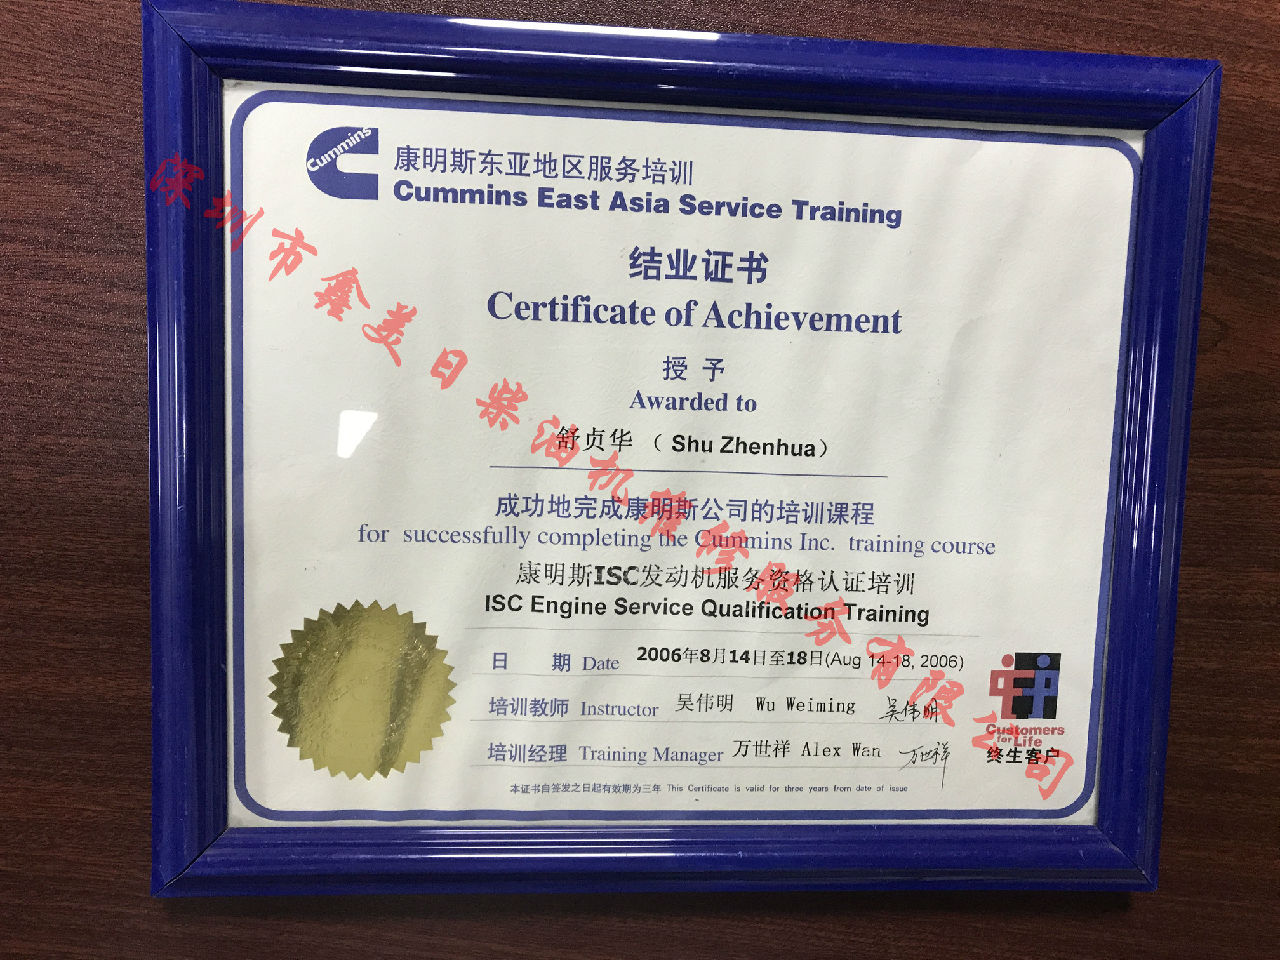 2006年 北京康明斯 舒贞华 ISC  服务资格认证培训证书